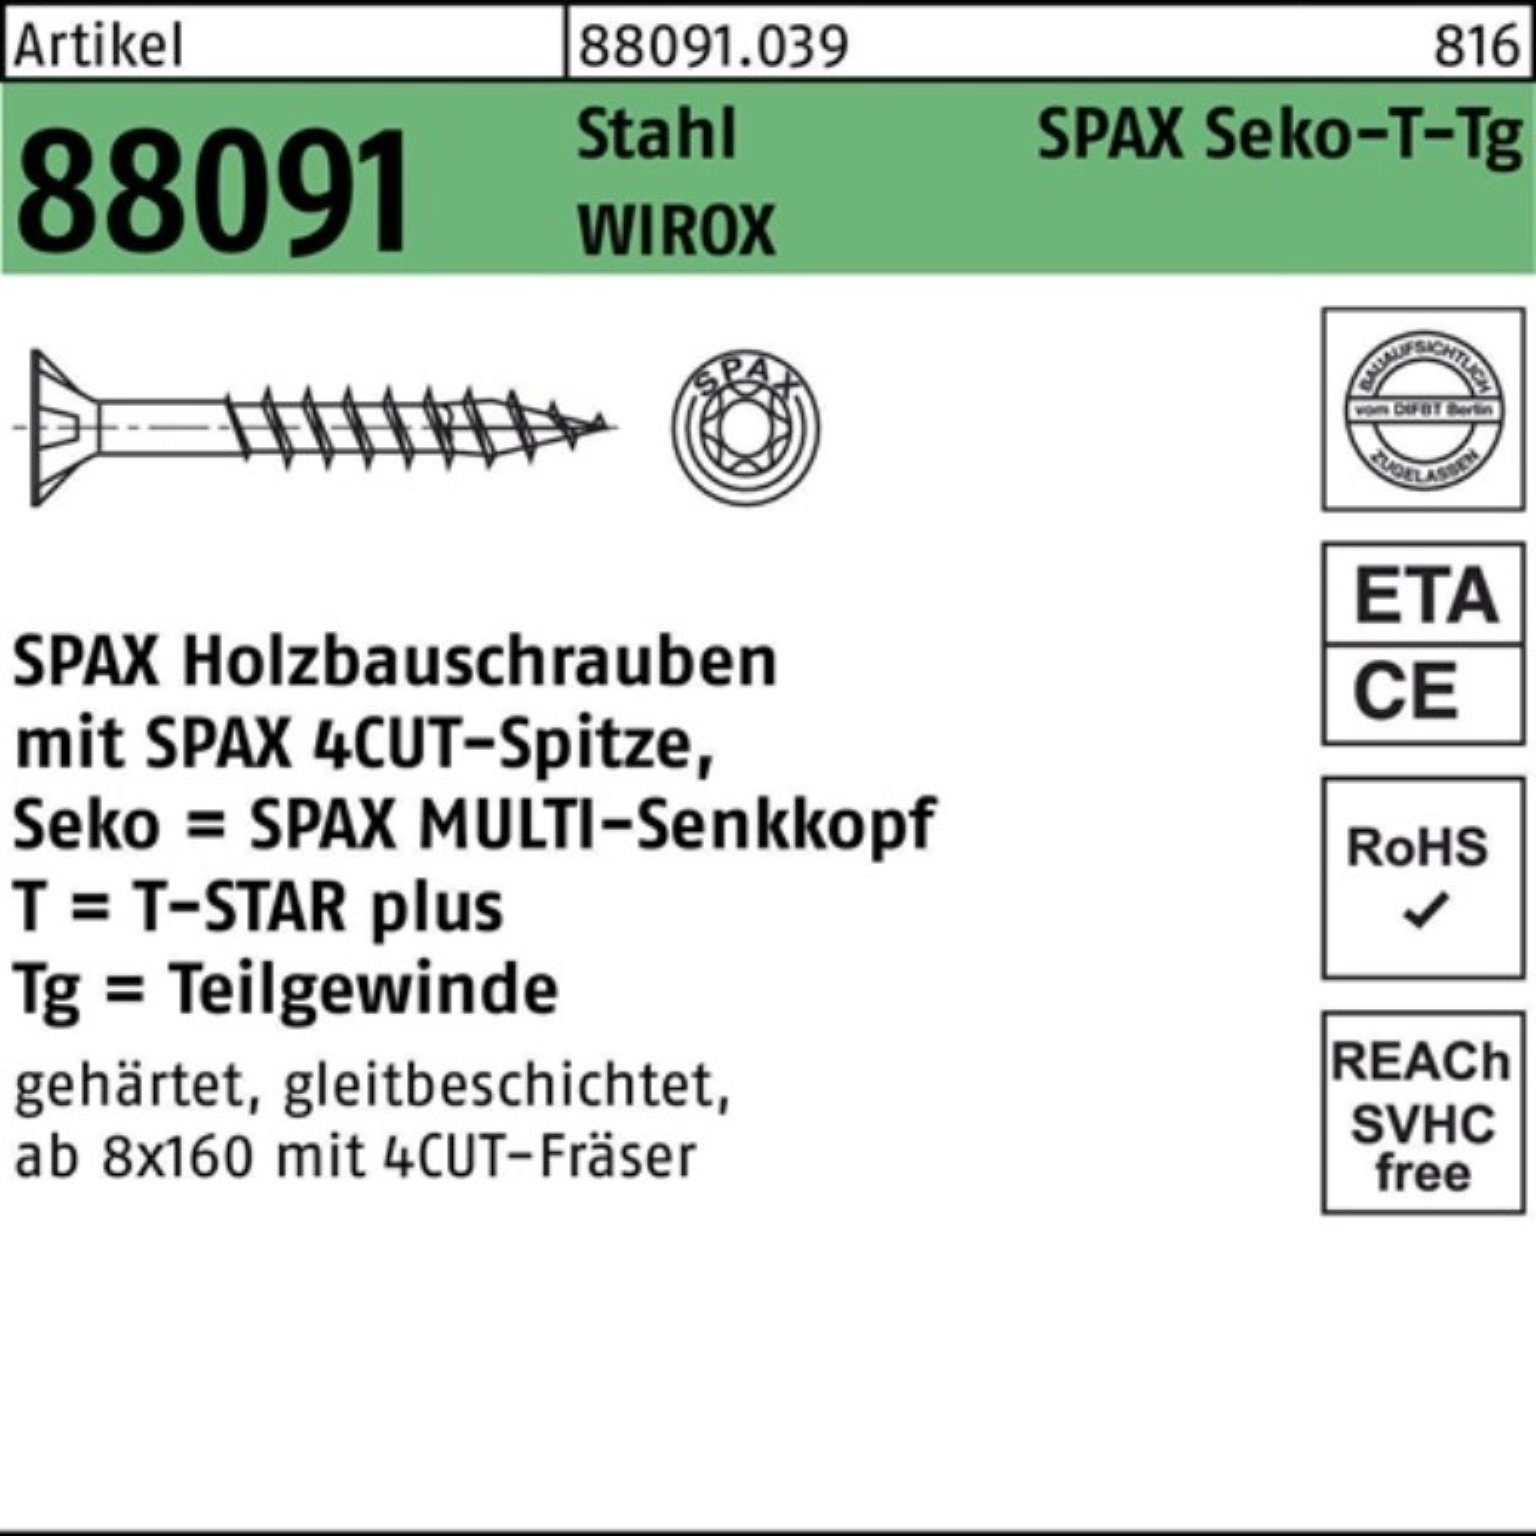 SPAX Schraube 100er Pack Schraube R 88091 SEKO/T-STAR TG 10x 240/80-T50 Stahl WIROX